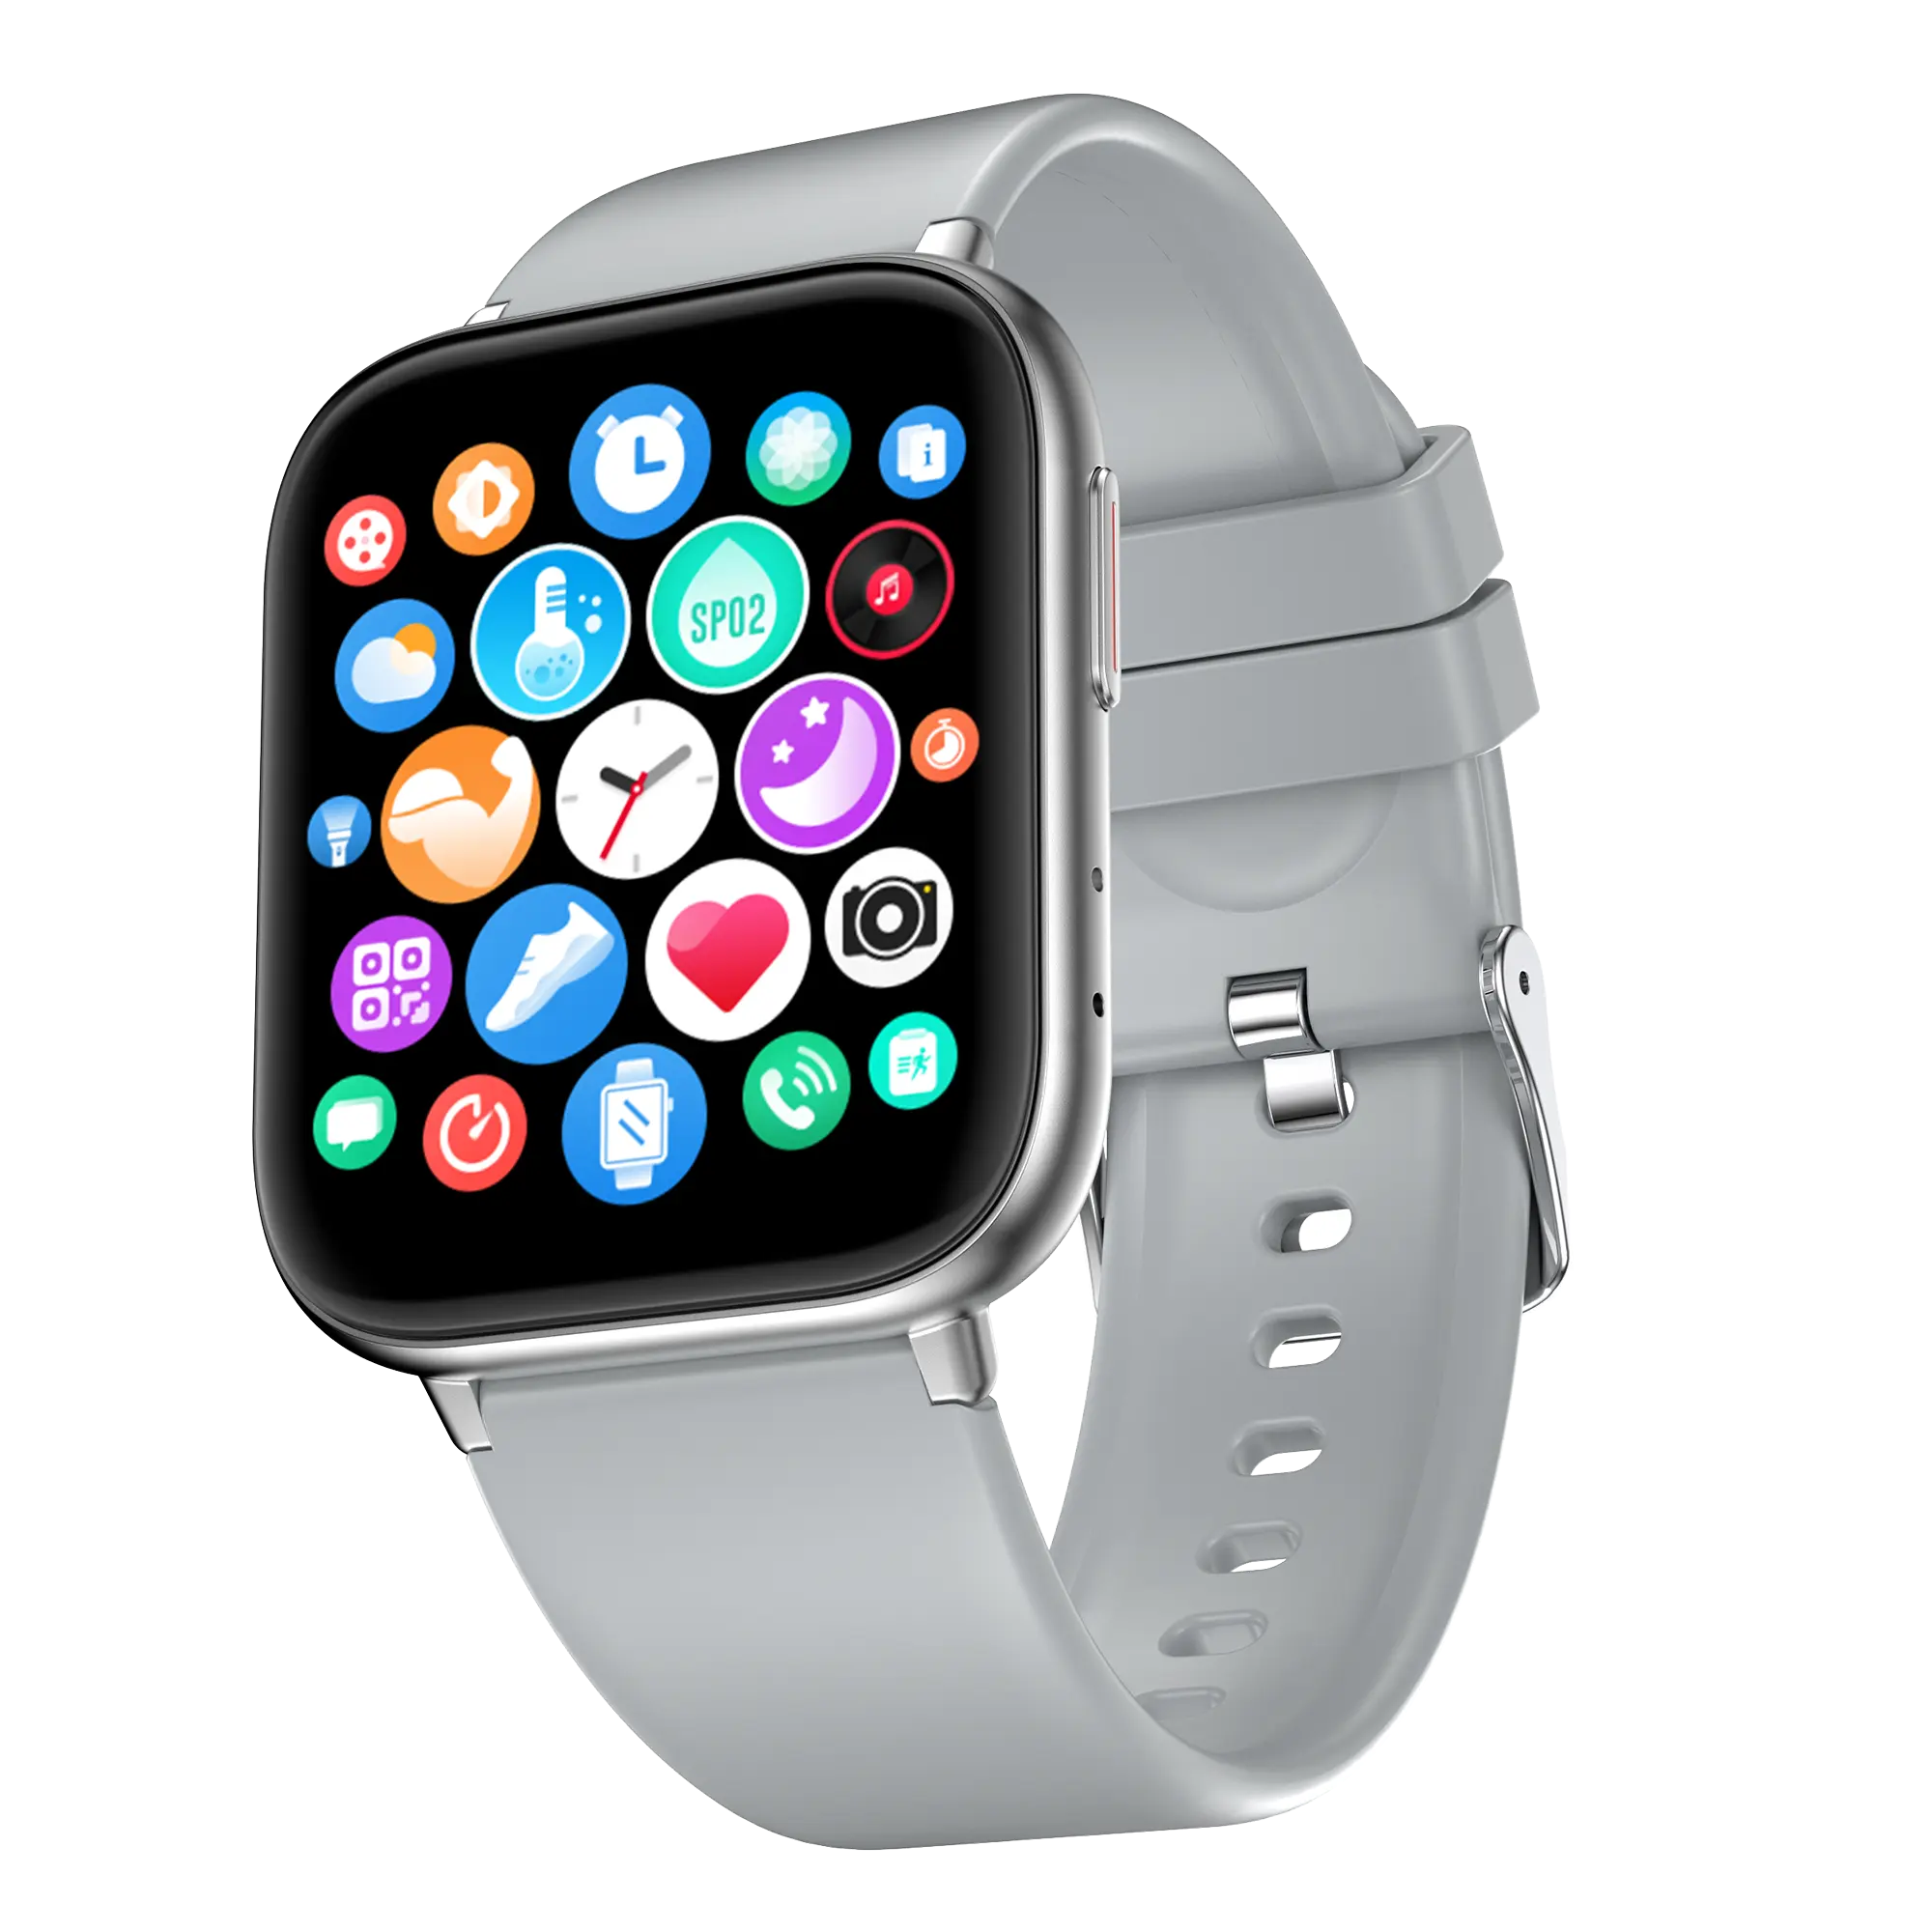 Miglior smartwatch per le notifiche, orologio da polso intelligente più accurato con frequenza cardiaca e pressione sanguigna